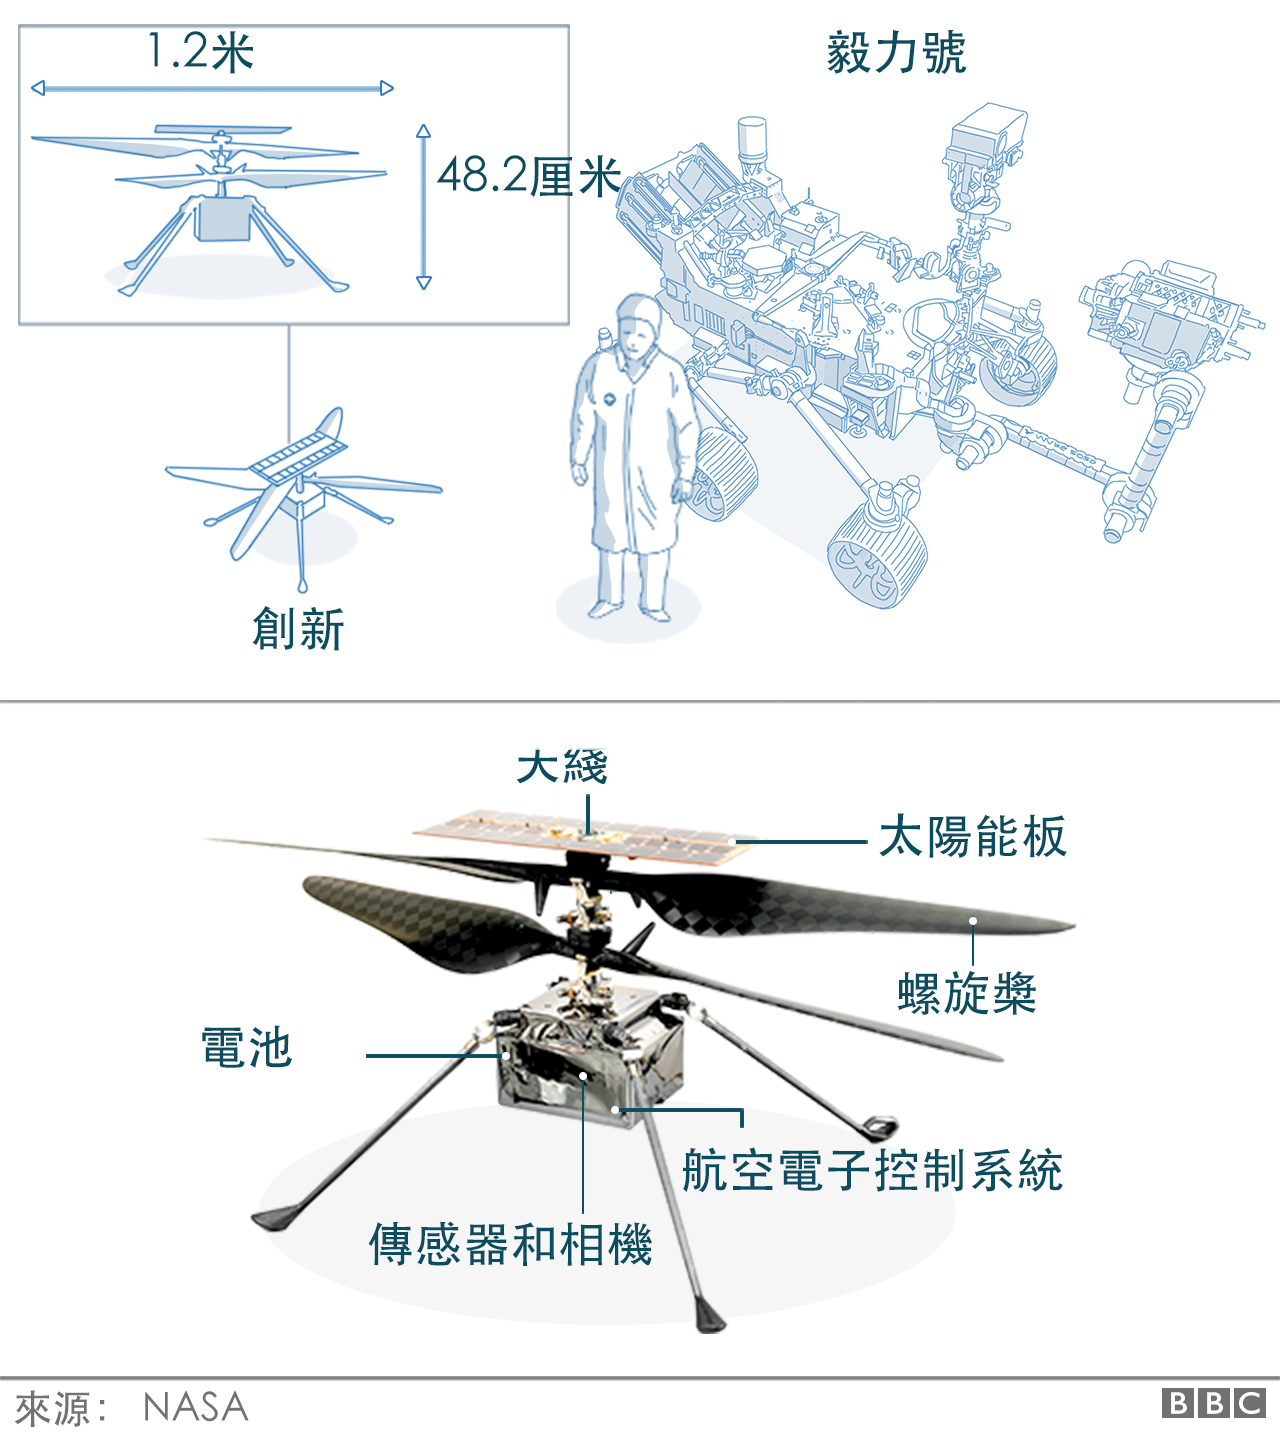 美国 毅力号 火星探测器 就地取材制氧成功 c News 中文